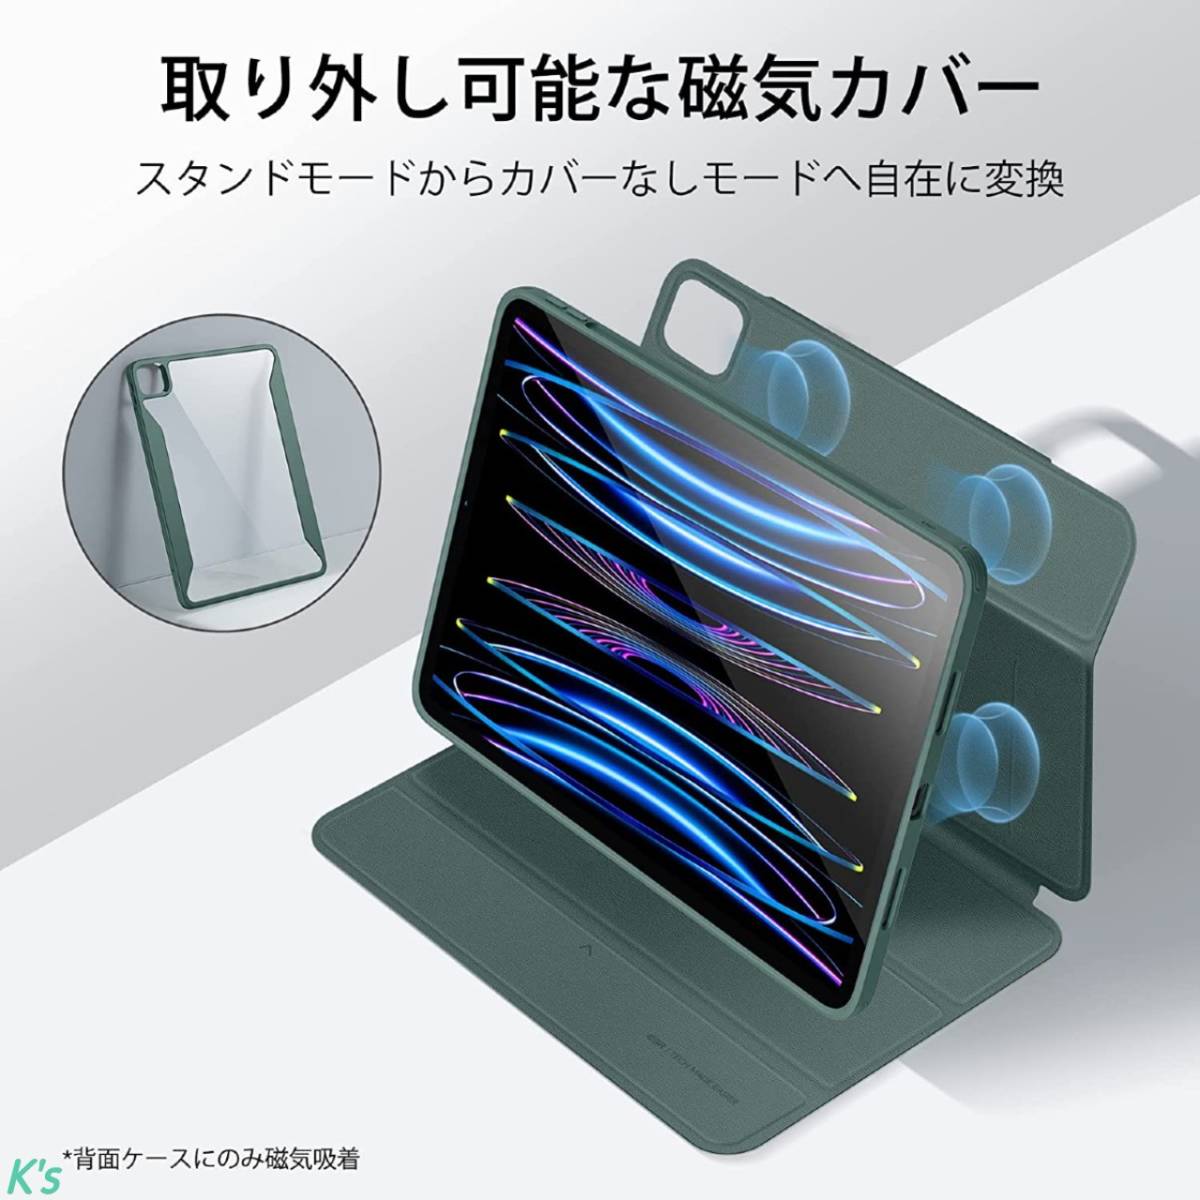 グリーン 取り外し可能な磁気カバー iPad Pro 11 第4世代 ( 2022 / 2021 ) Pencil 2 対応 オートスリープ / ウェイク対応 ケース カバー